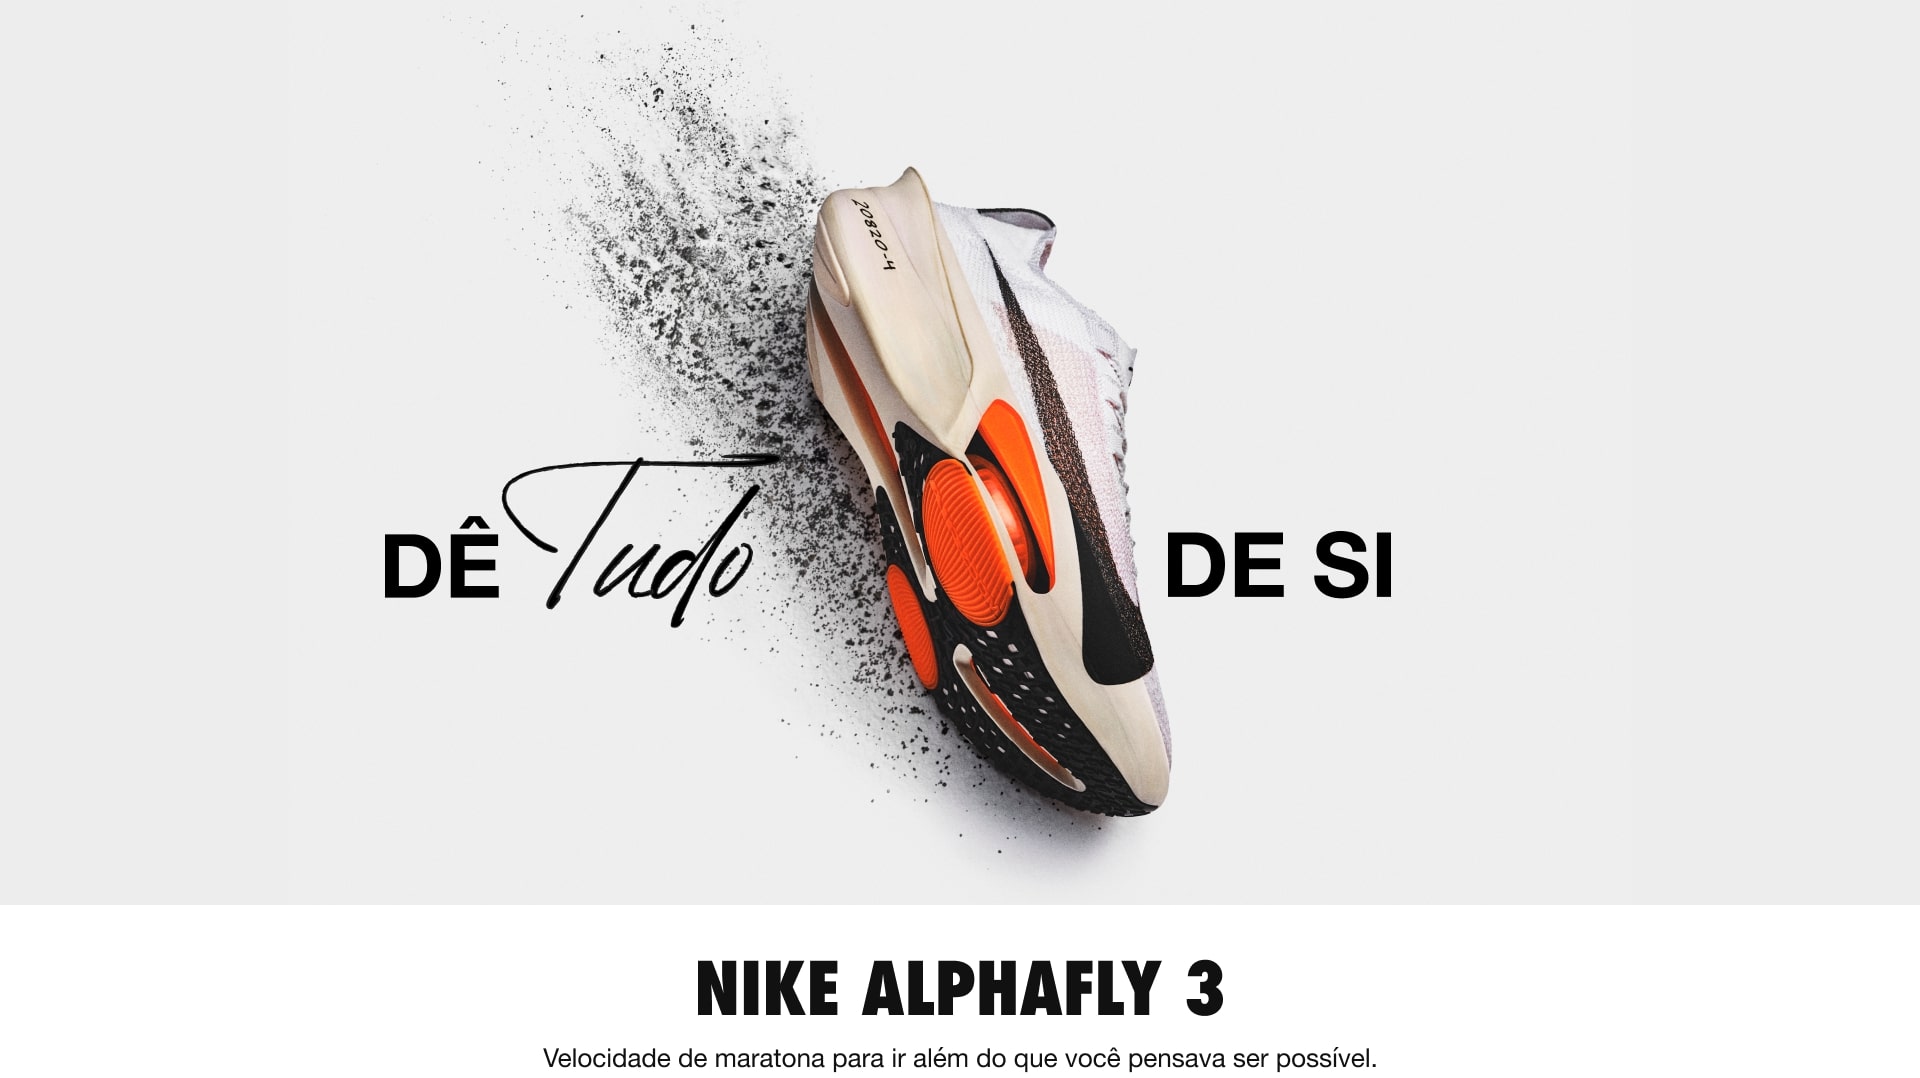 Nike Alphafly 3 - Velocidade de maratona para ir além do que você pensava ser possível.